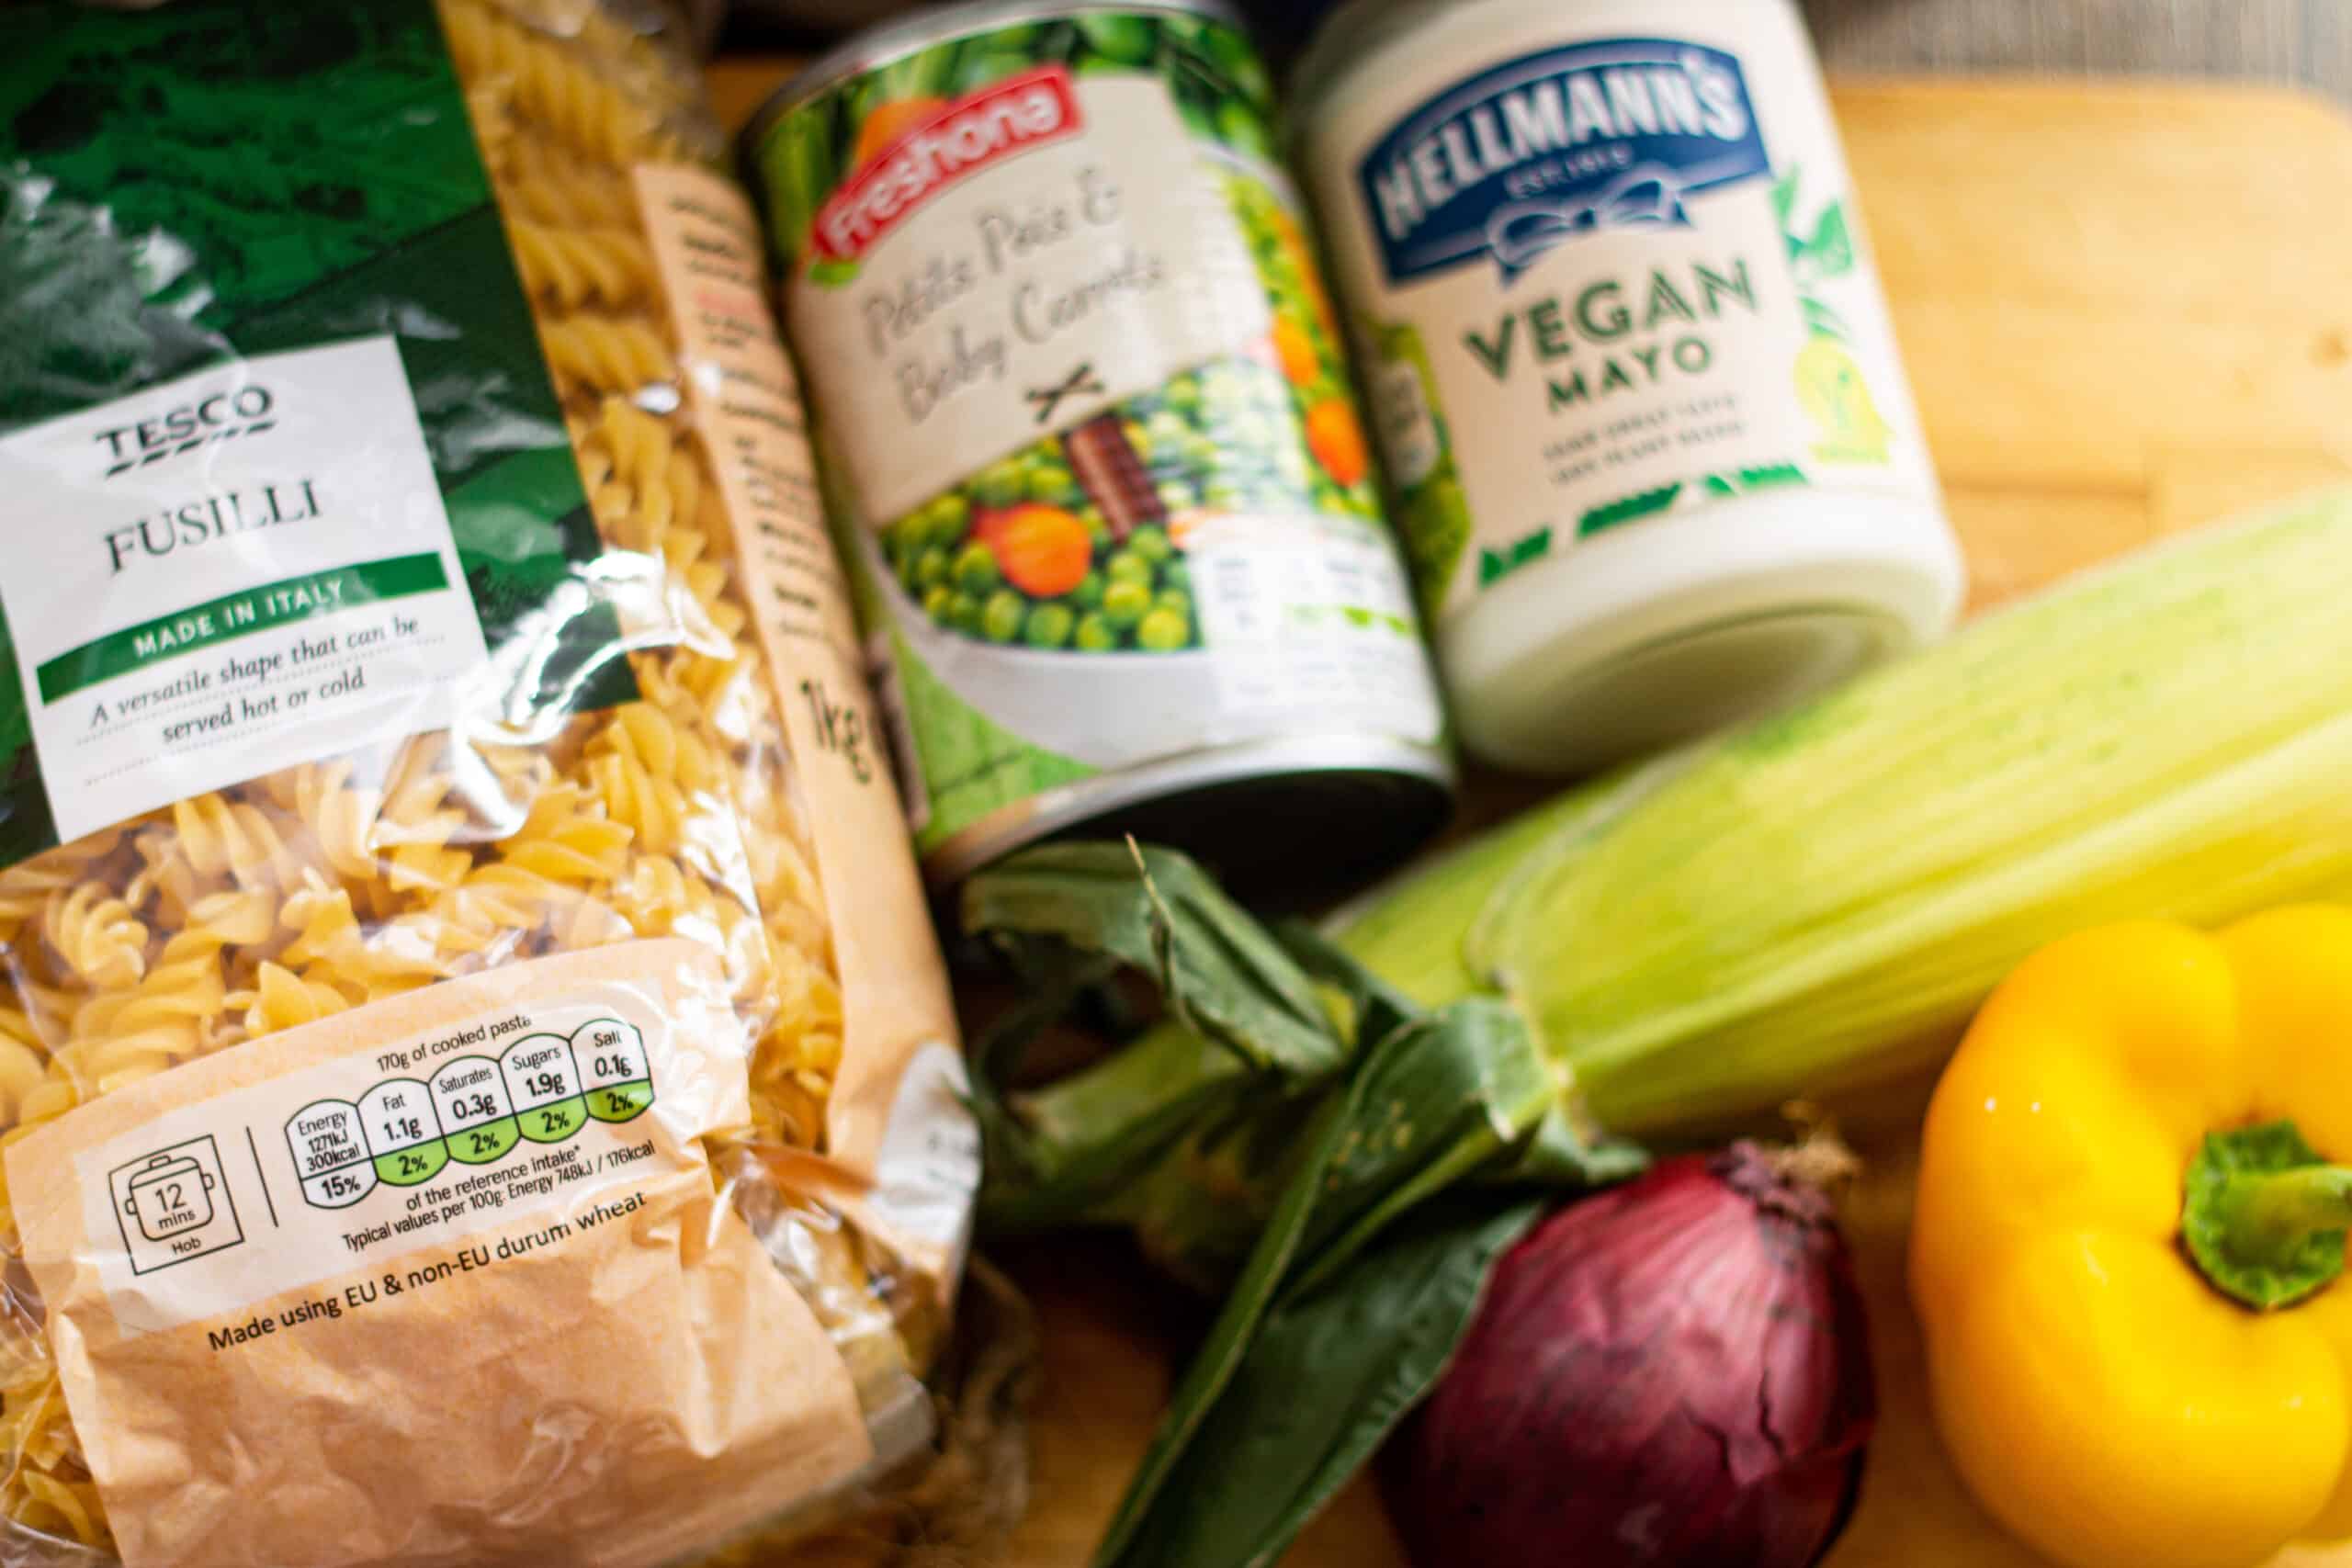 Ingredients for making a vegan pasta salad